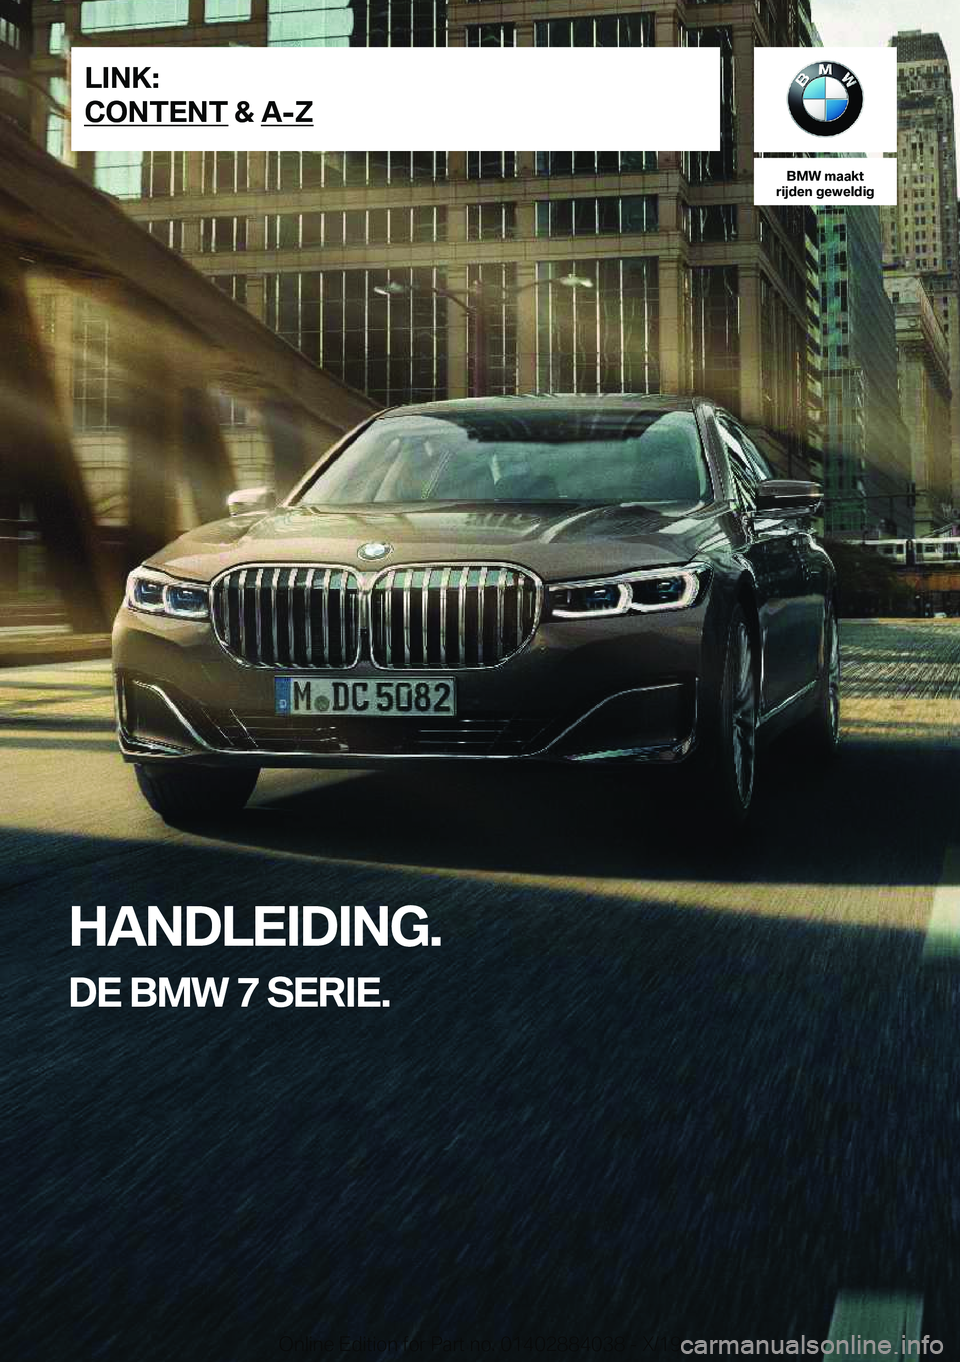 BMW 7 SERIES 2020  Instructieboekjes (in Dutch) �B�M�W��m�a�a�k�t
�r�i�j�d�e�n��g�e�w�e�l�d�i�g
�H�A�N�D�L�E�I�D�I�N�G�.
�D�E��B�M�W��7��S�E�R�I�E�.�L�I�N�K�:
�C�O�N�T�E�N�T��&��A�-�Z�O�n�l�i�n�e��E�d�i�t�i�o�n��f�o�r��P�a�r�t��n�o�.��0